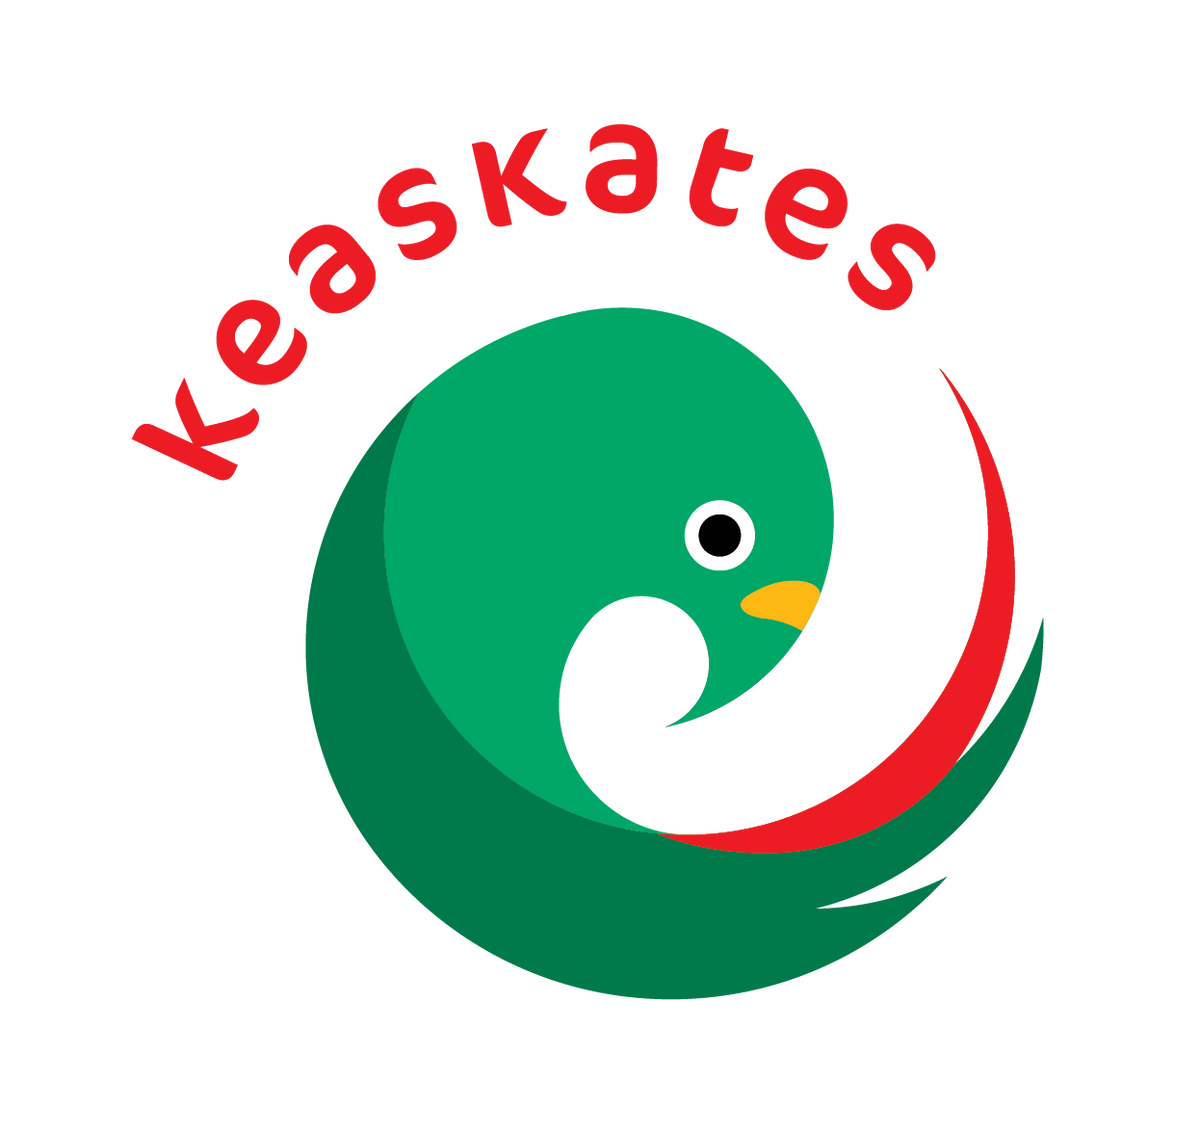 Keaskates' colorful New Zealand Kea logo